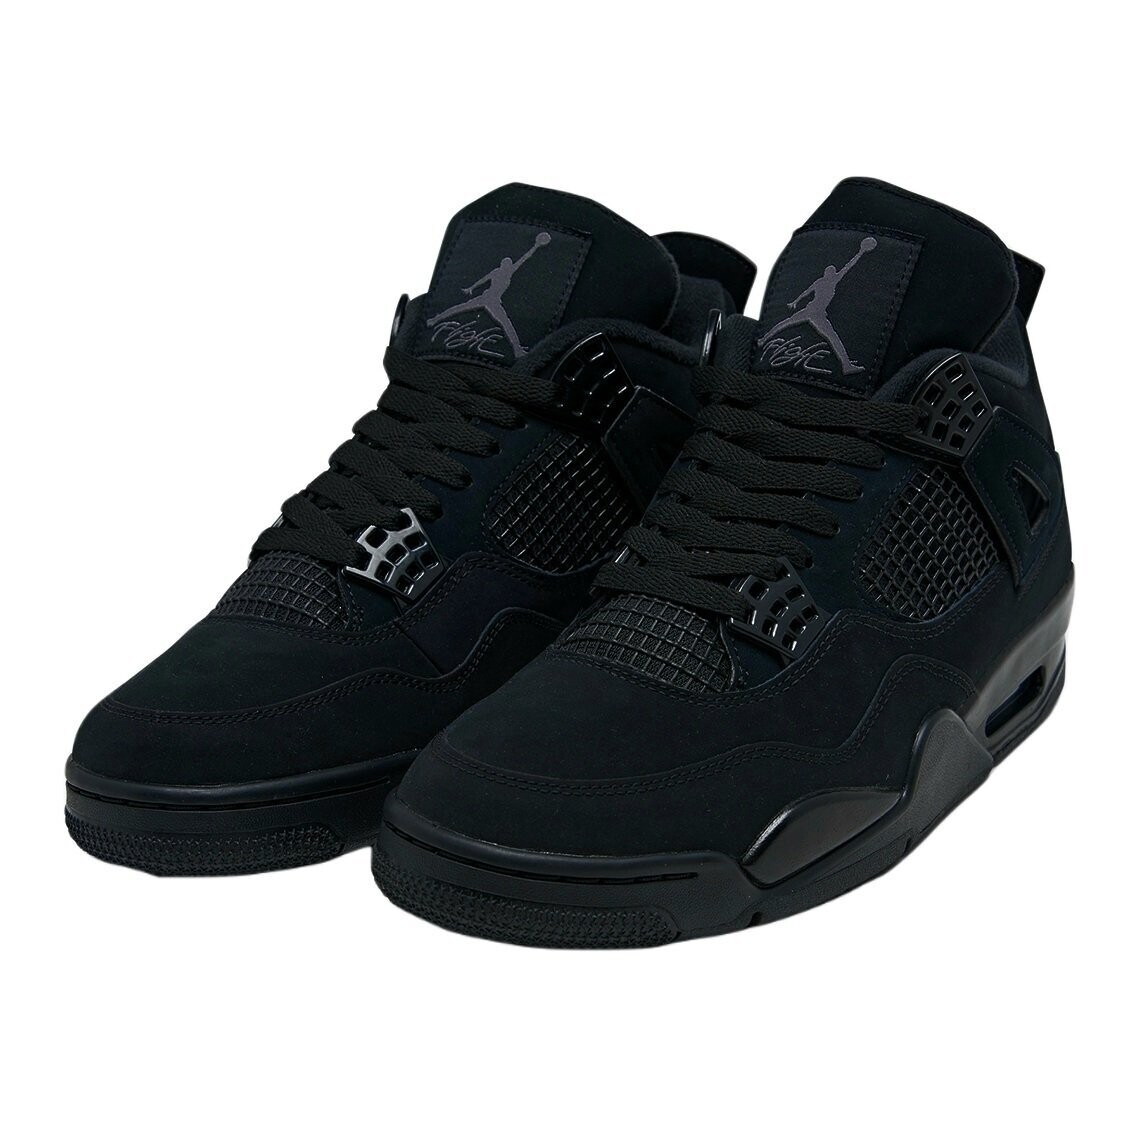 Air Jordan Retro 4 Black Cat Sneakers